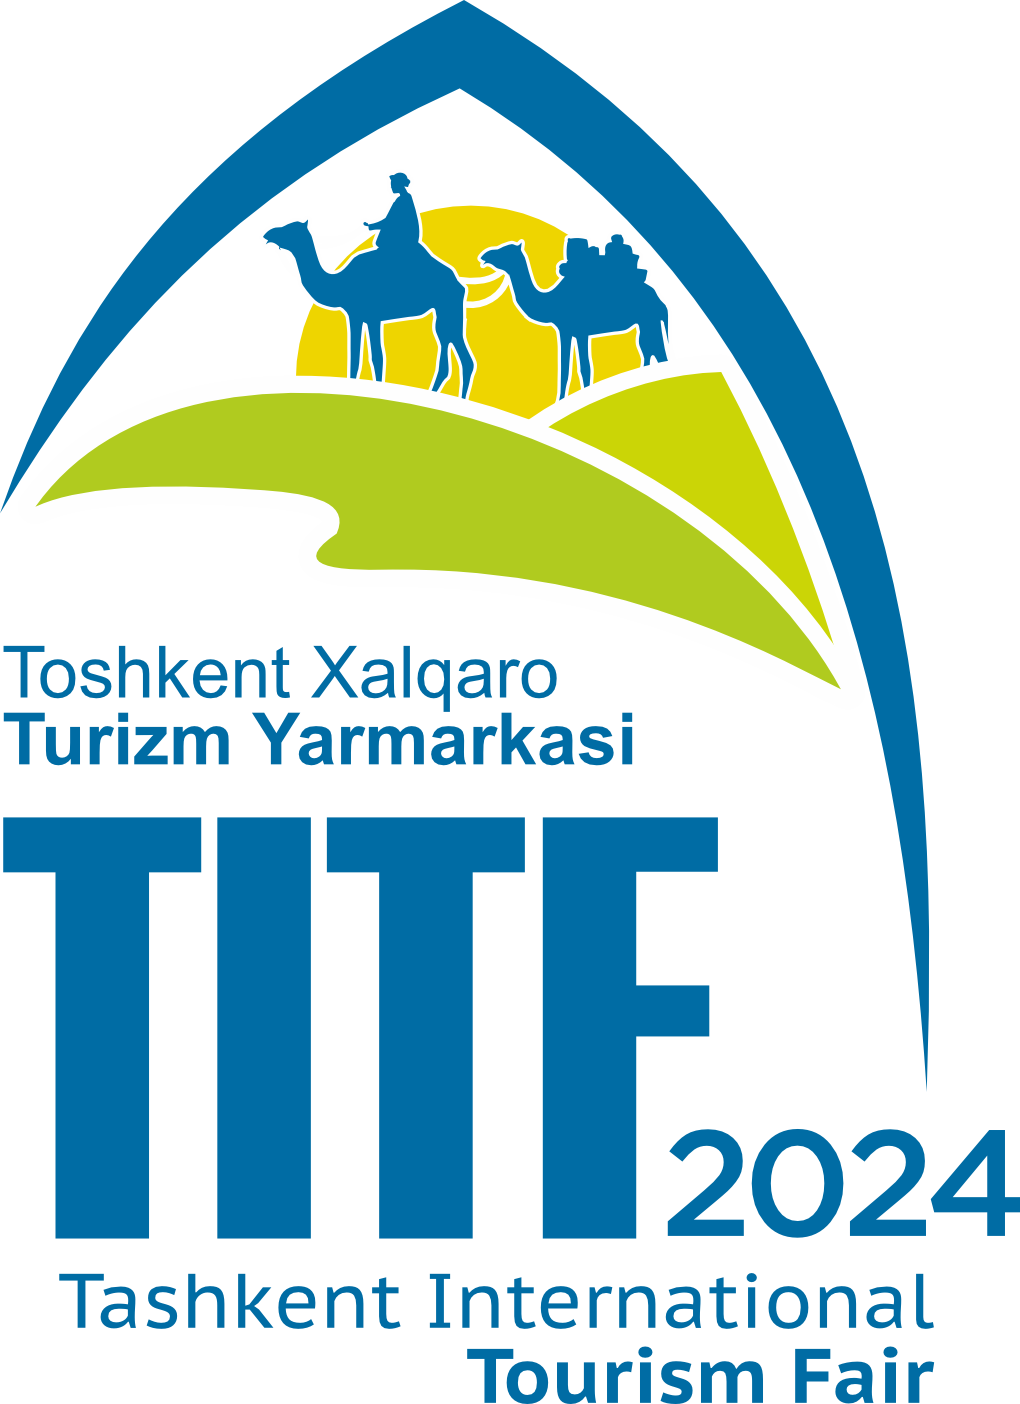 Ташкентская международная туристическая ярмарка «Туризм на Шёлковом пути» 2024 (ТМТЯ 2024) приглашает в мир безграничных возможностей!